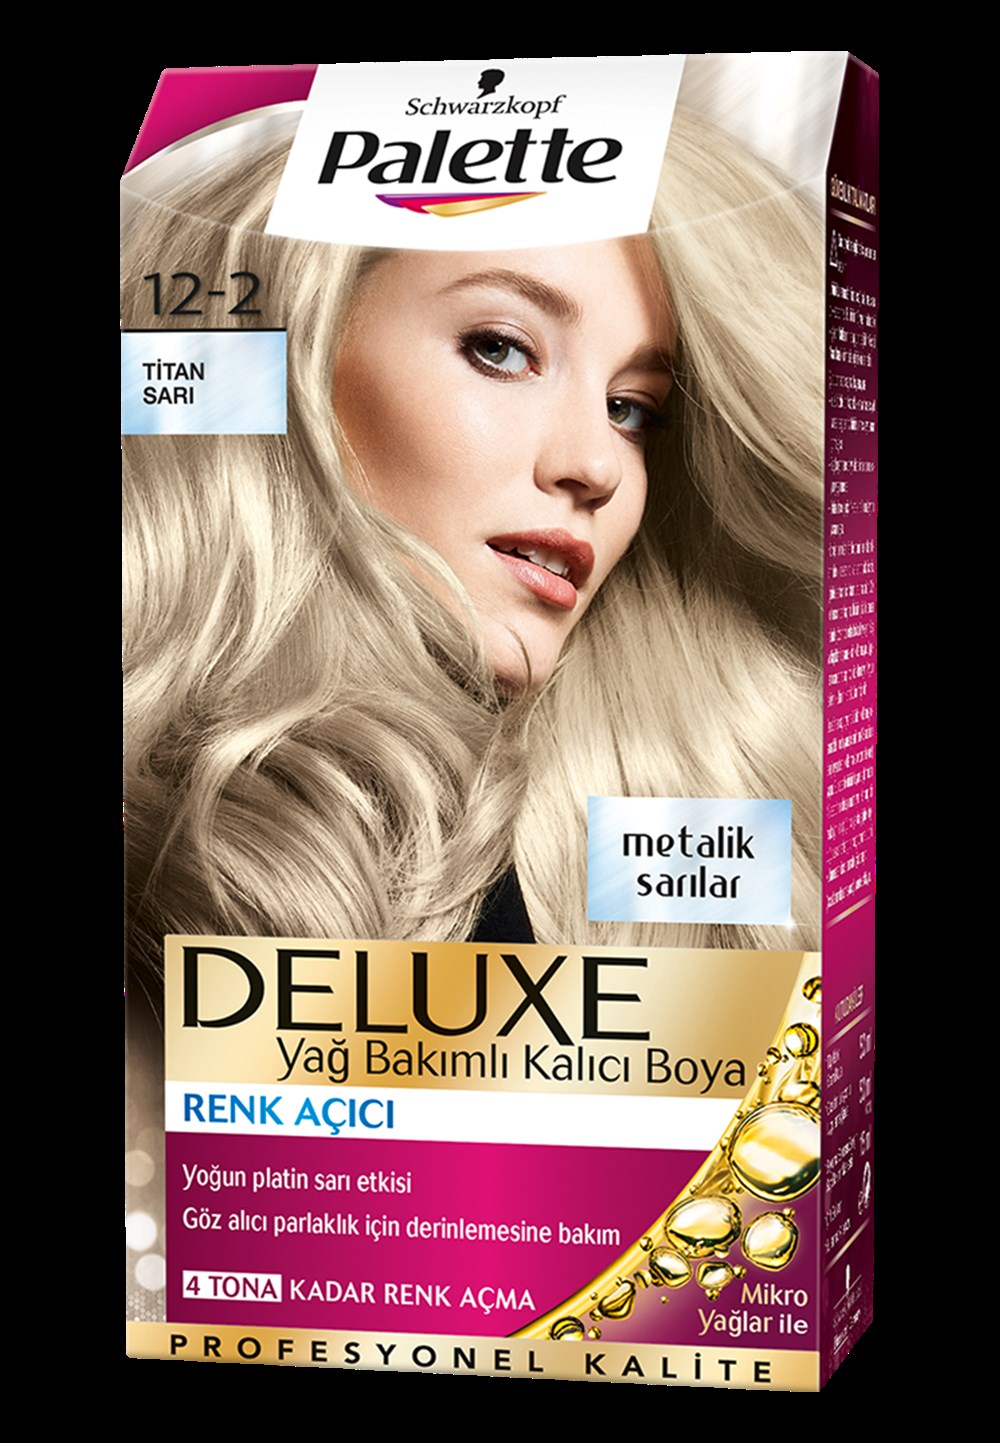 Palette Deluxe Saç Boyası 12-2 Tıtan Sarı | Netegir.com